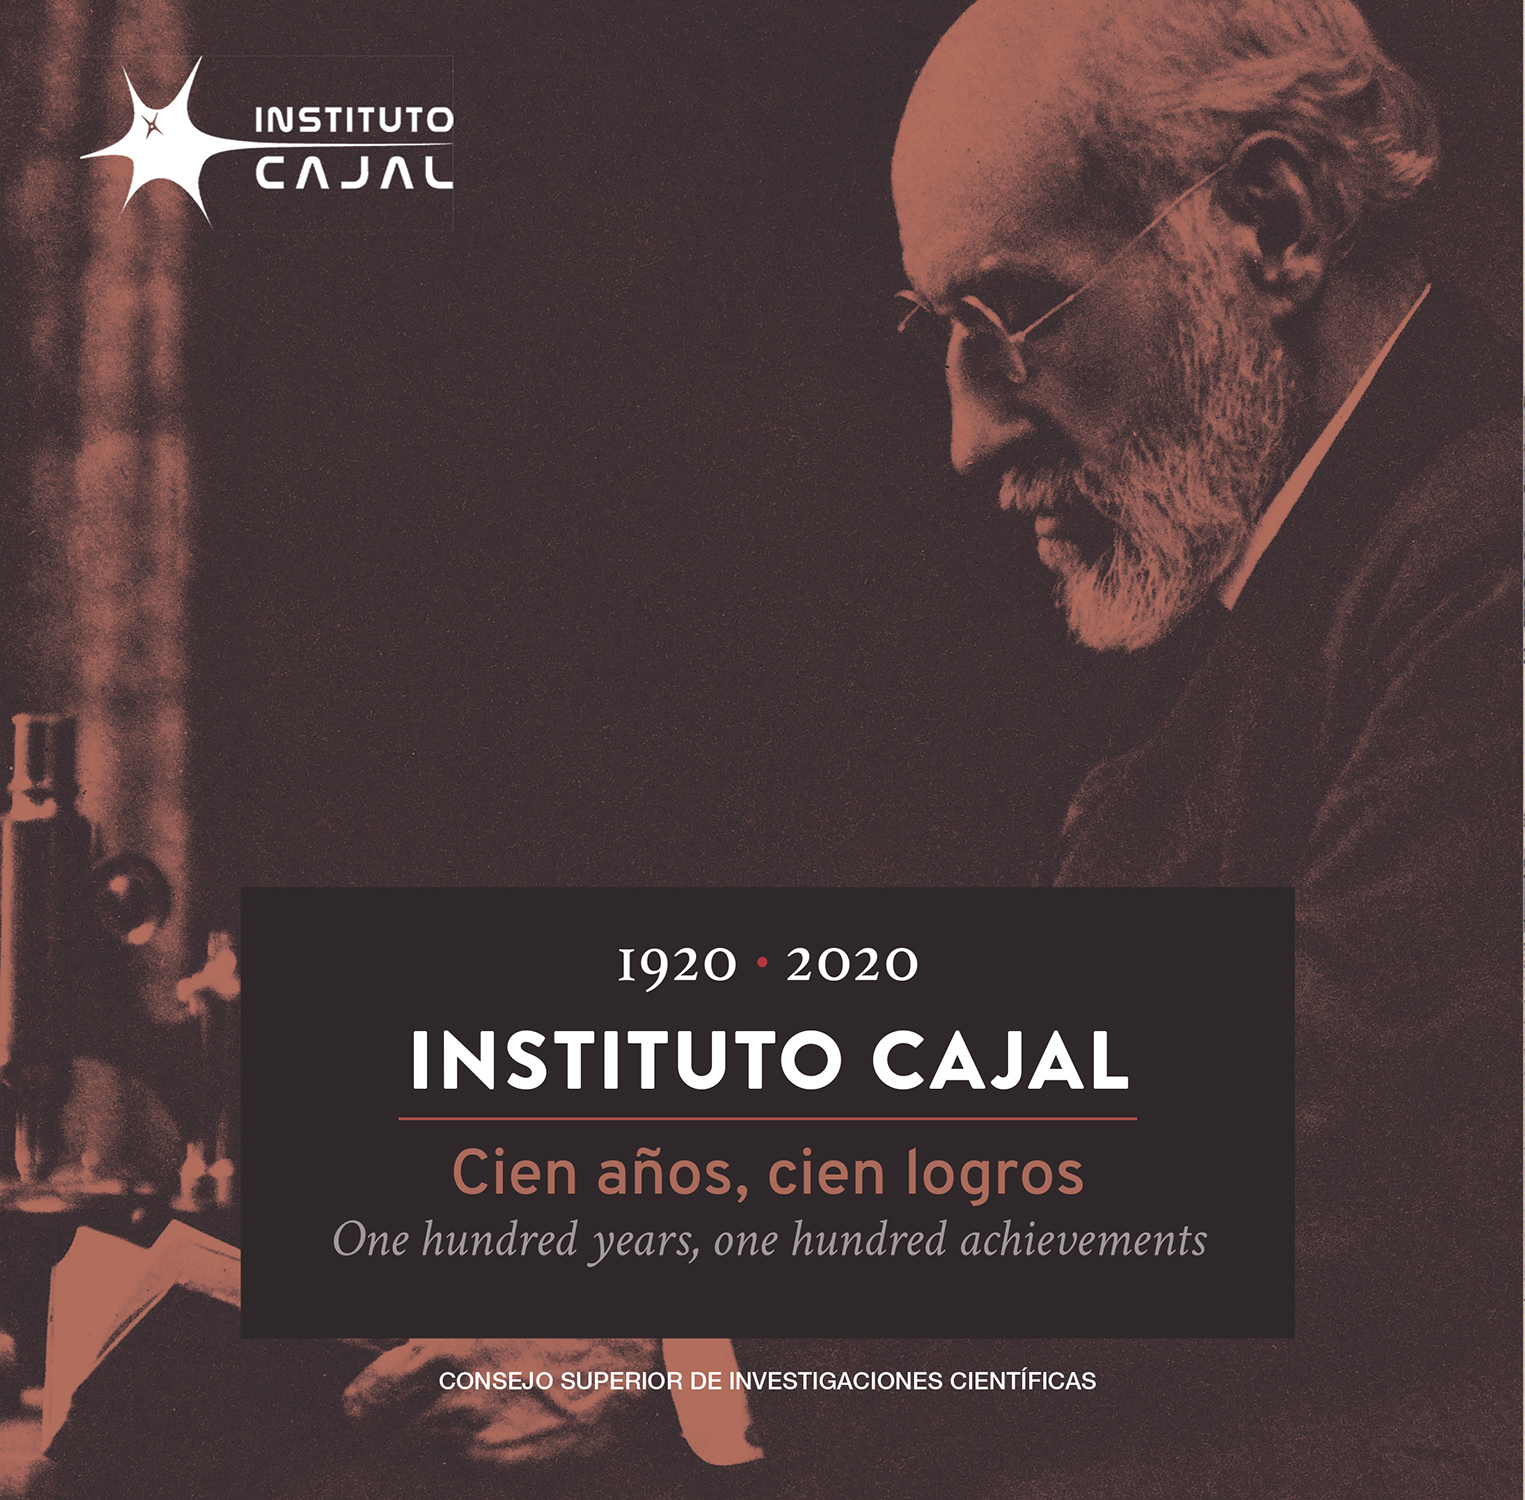 Instituto Cajal: 1920-2020 